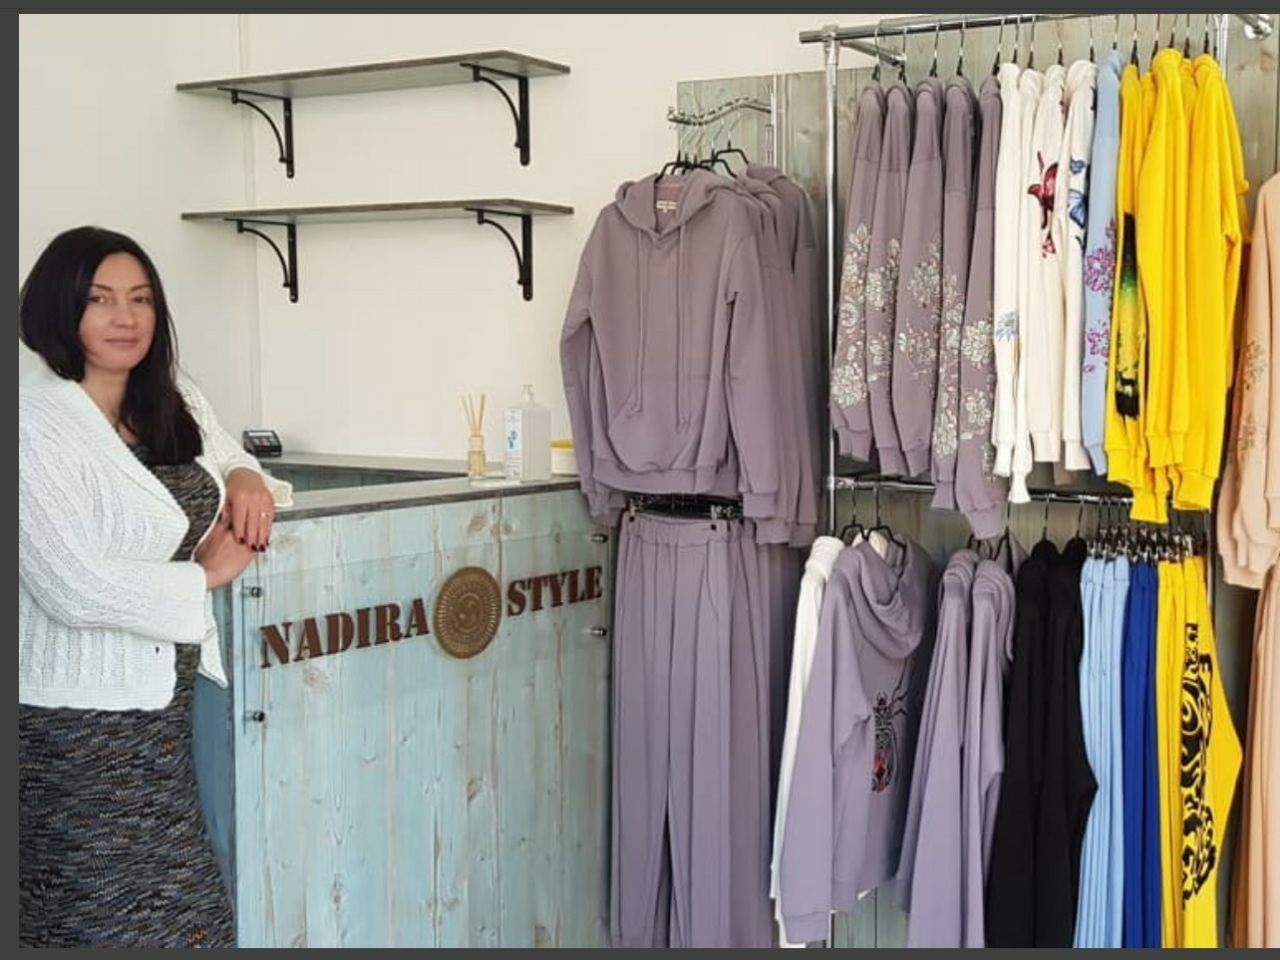 Магазин одягу власного виробництва Nadira Style